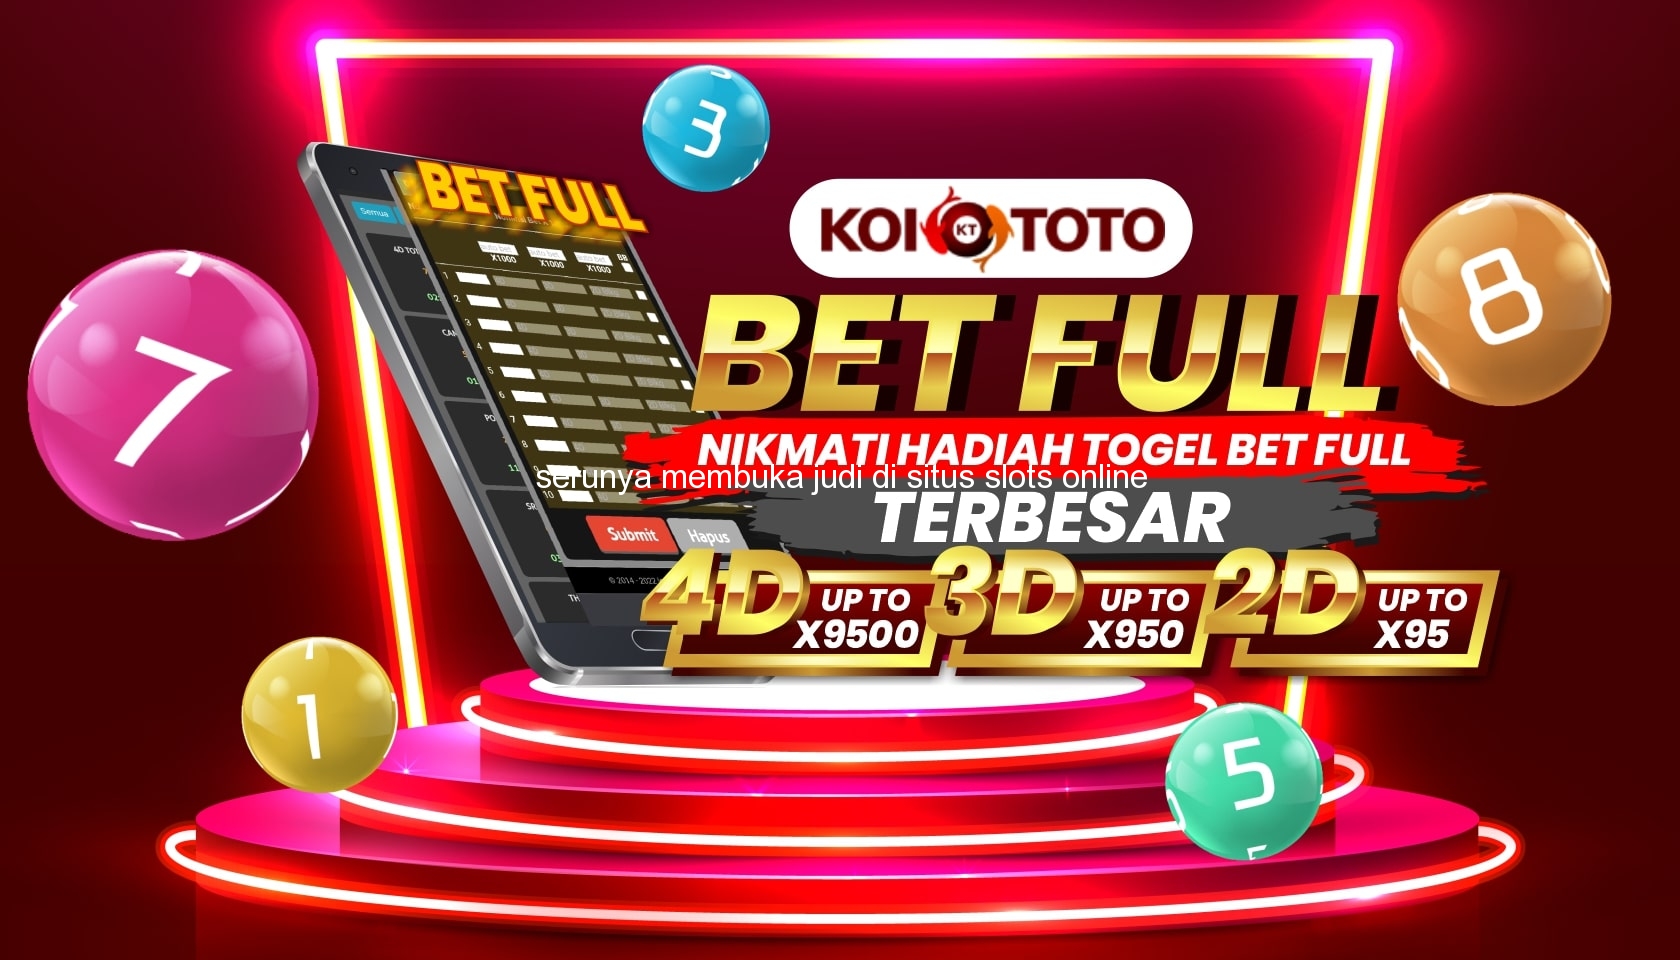 Serunya Membuka Judi di Situs Slots Online Terbaik di Karangmojo – KOITOTO